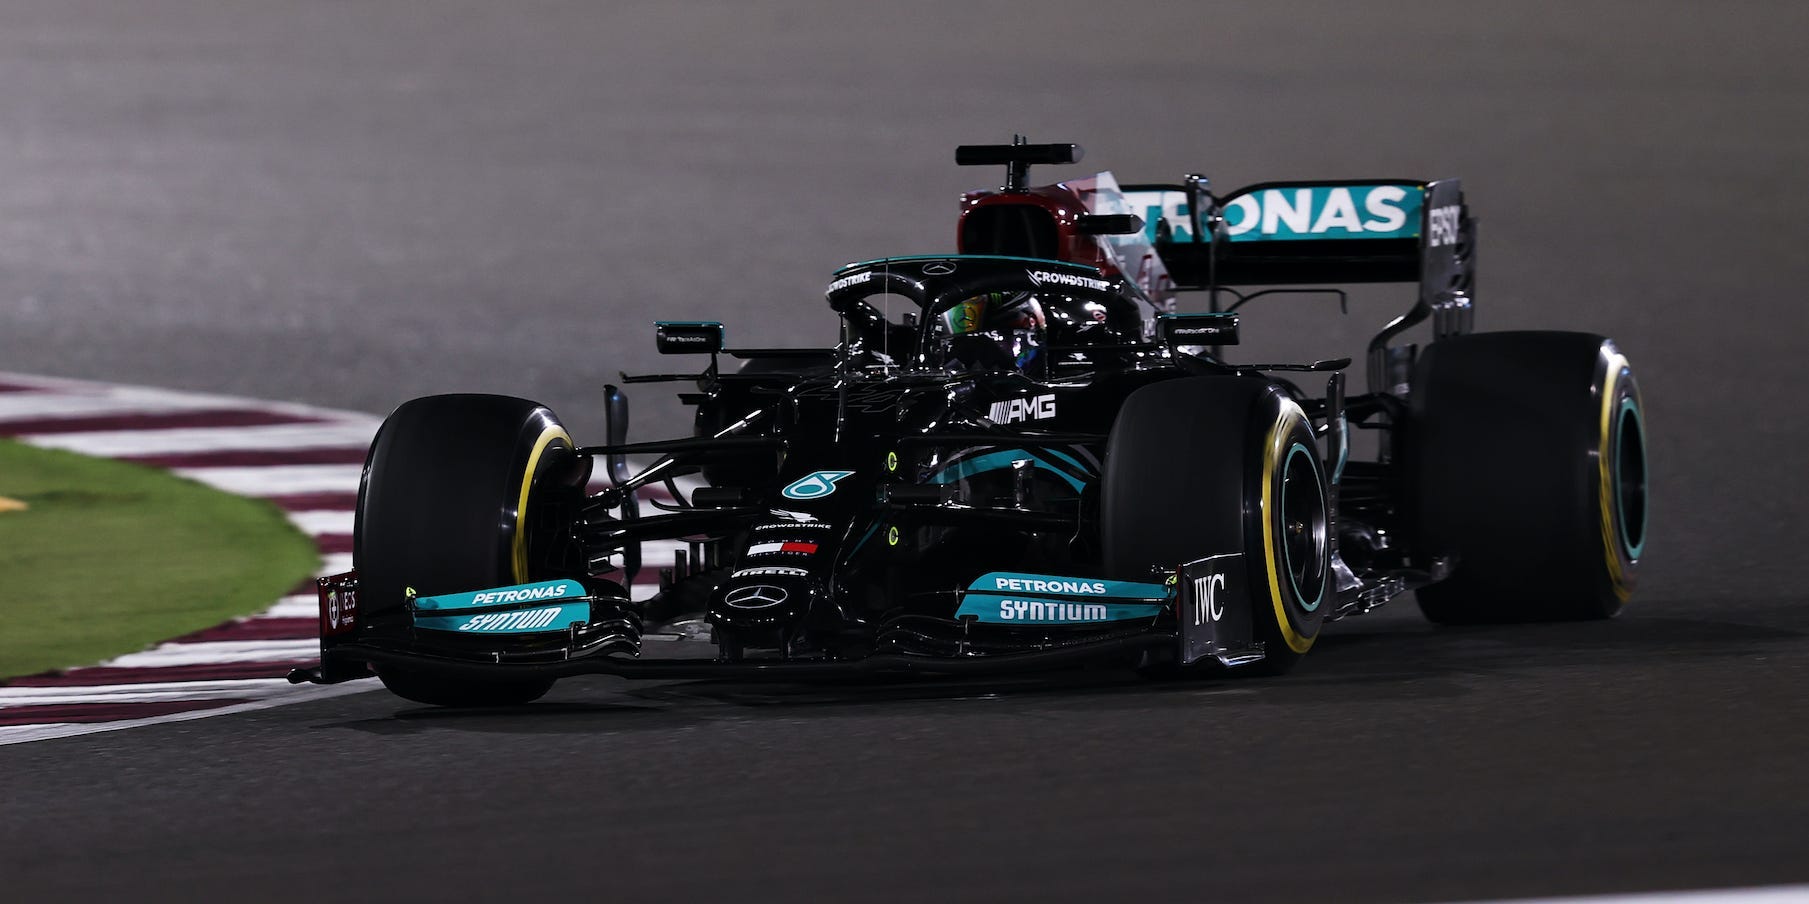 Lewis Hamilton drives his Mercedes F1 car during the 2021 Qatar Grand Prix.